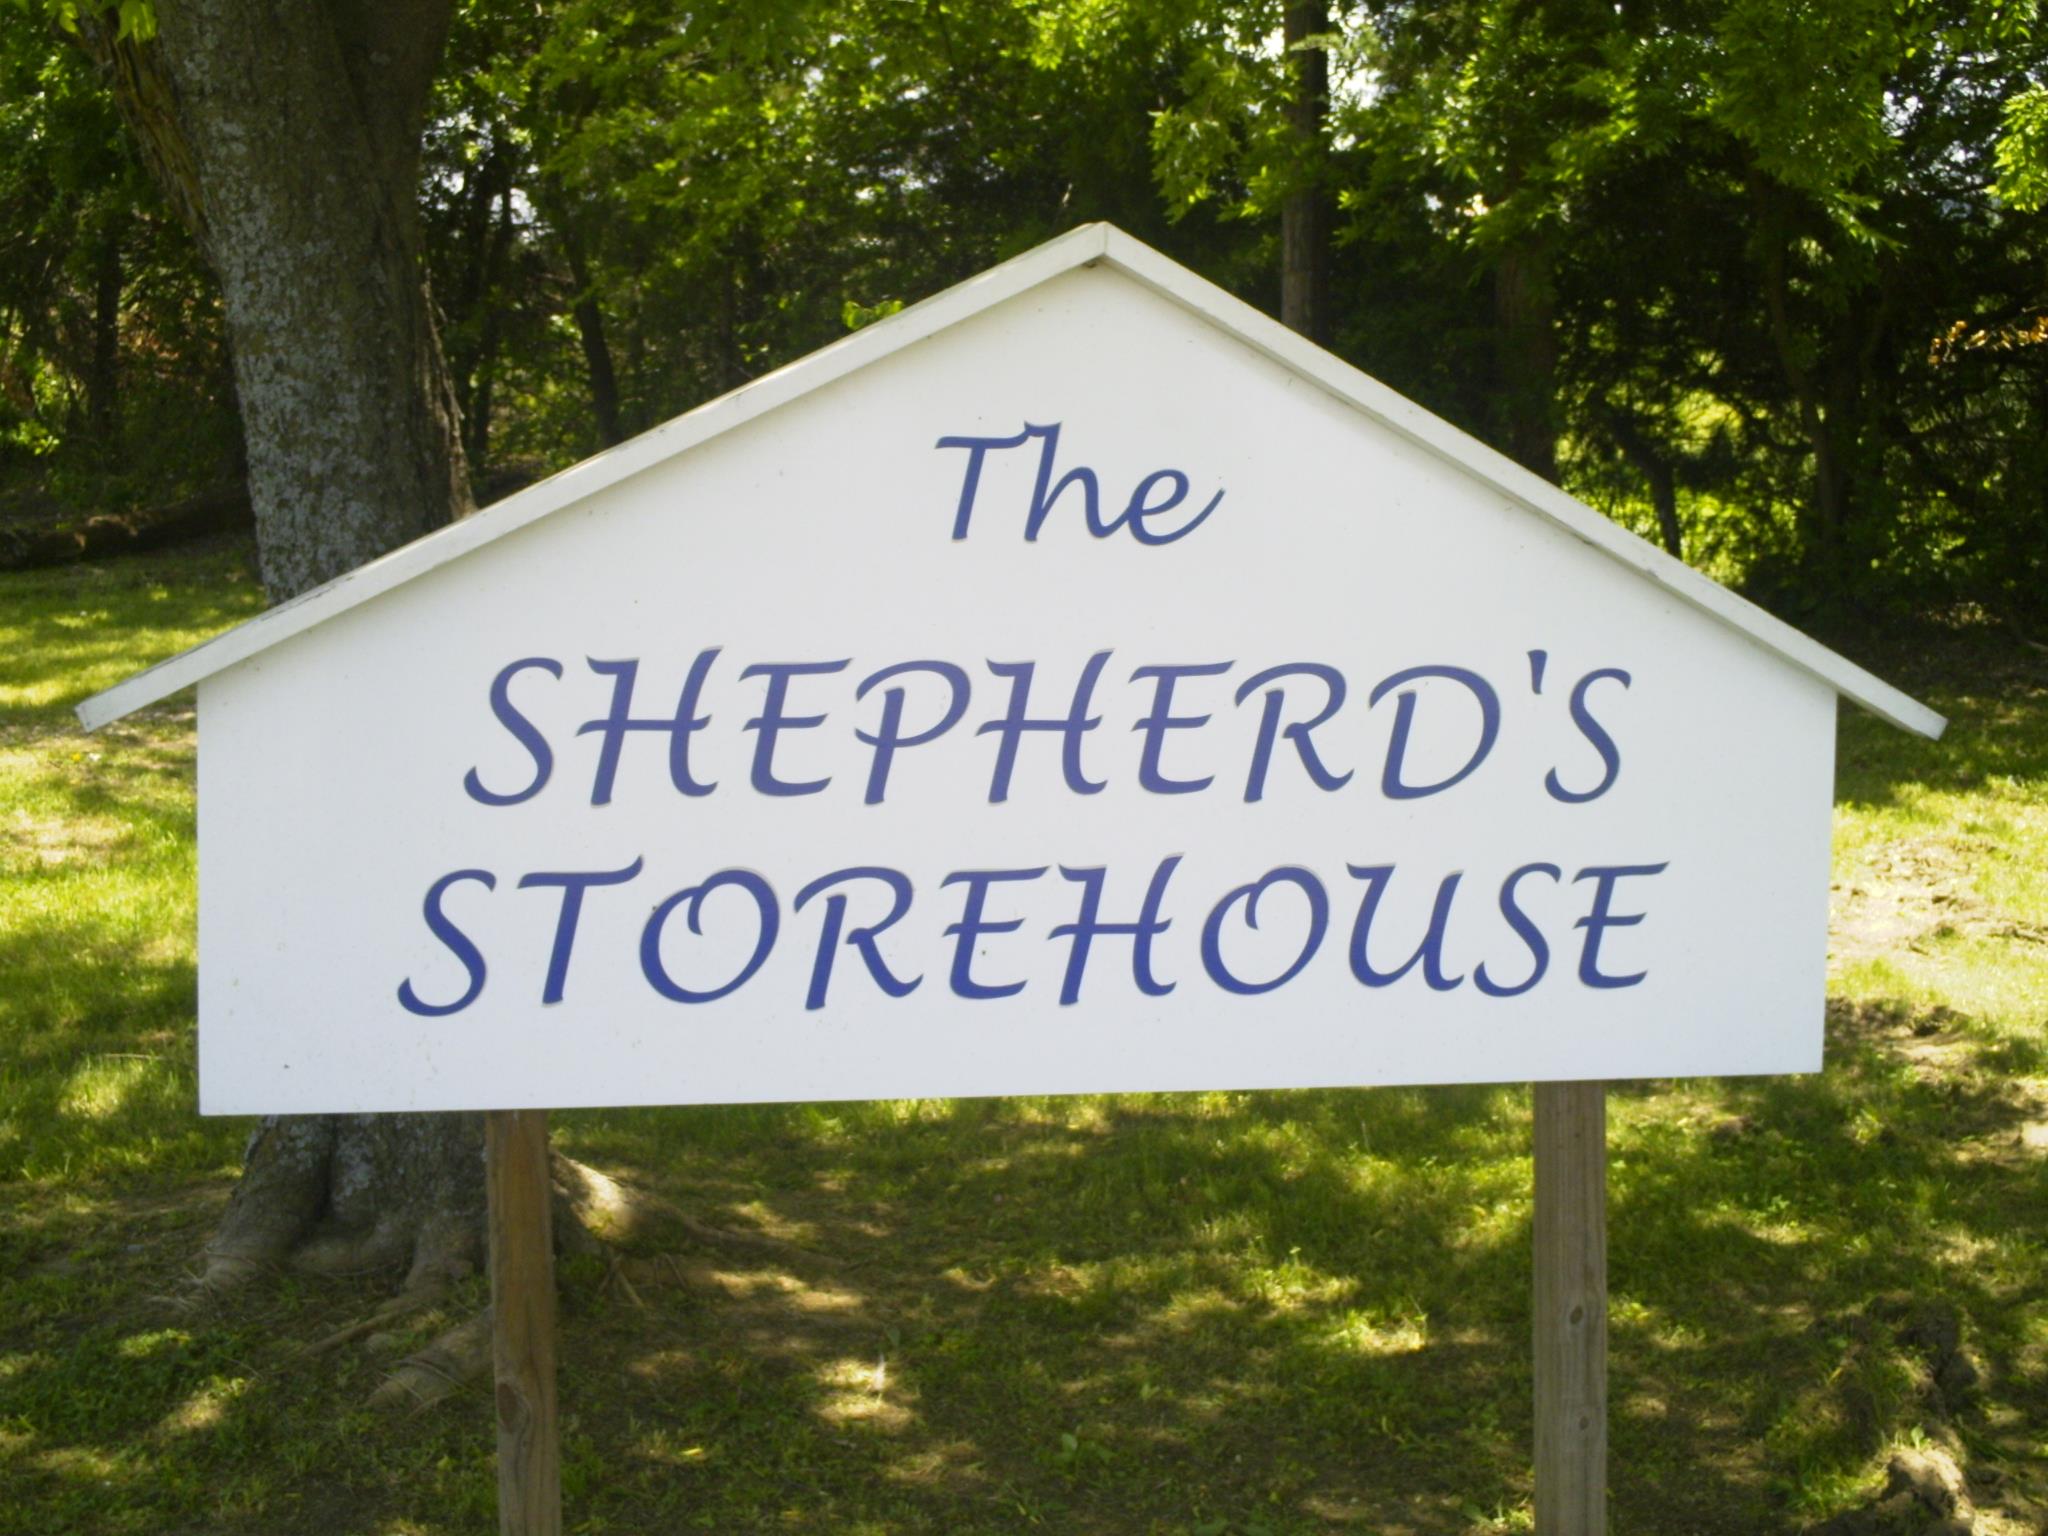 The Shepherd's Storehouse